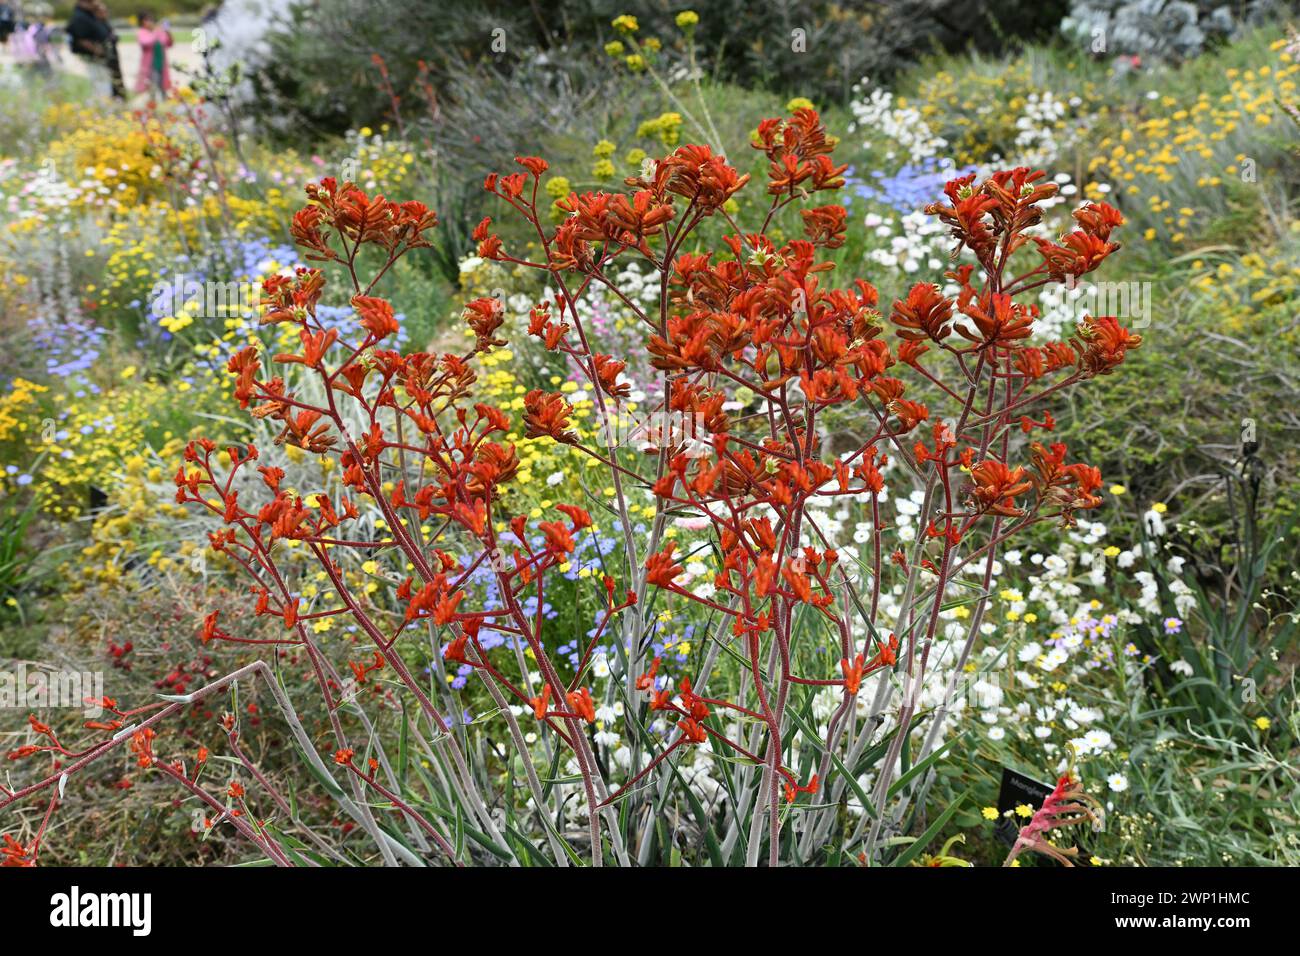 Anigozanthos rufus è una pianta perenne sempreverde originaria della costa meridionale dell'Australia Occidentale. I nomi comuni includono zampa di canguro rossa o cremisi Foto Stock